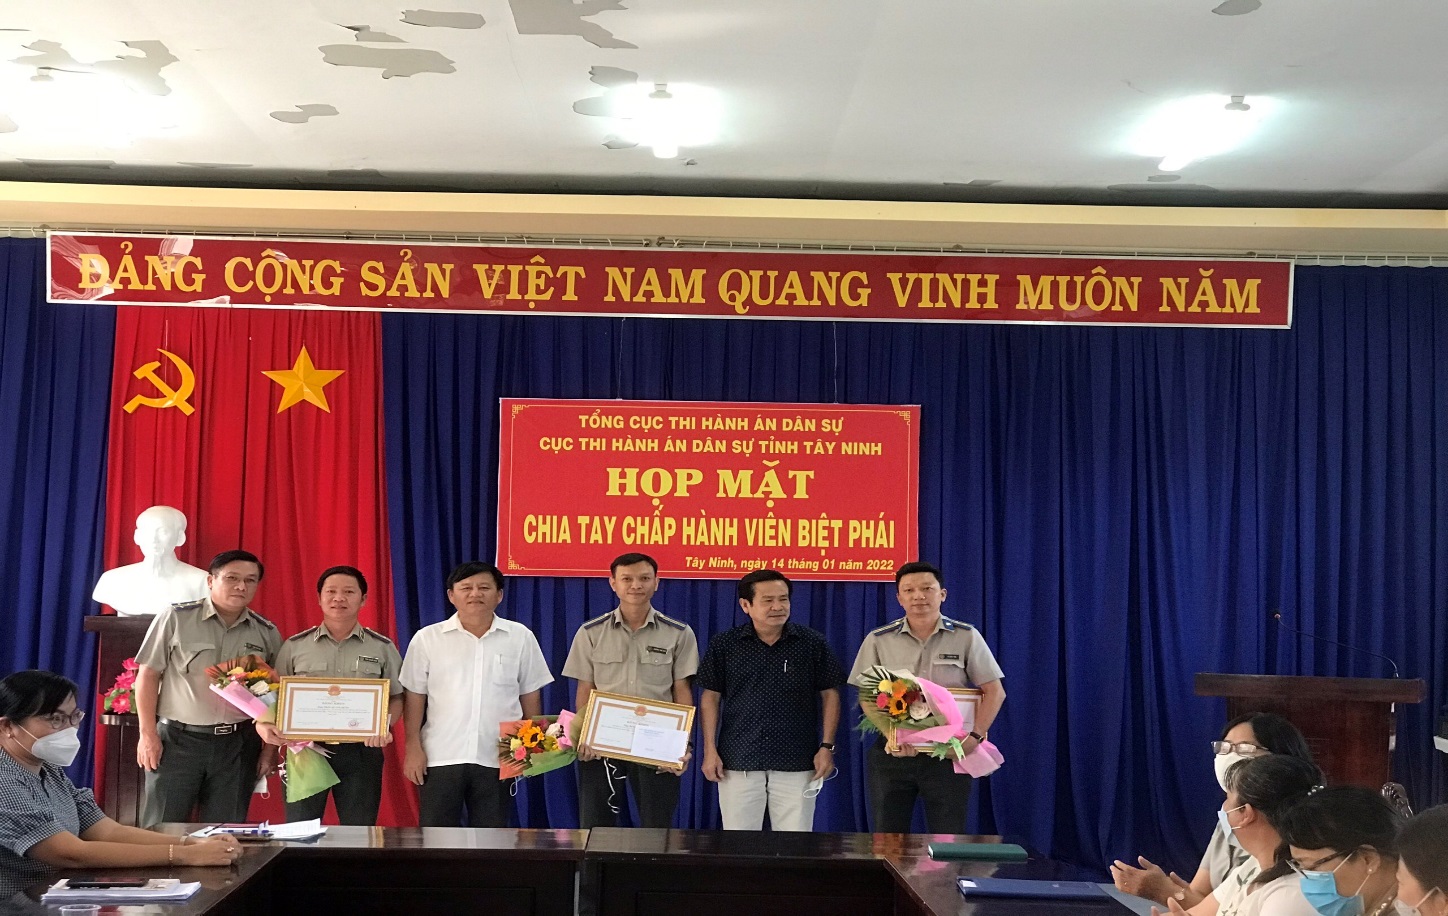 Cục THADS tỉnh Tây Ninh họp mặt chia tay Chấp hành viên biệt phái và trao Bằng khen của Chủ tịch Ủy ban nhân dân tỉnh